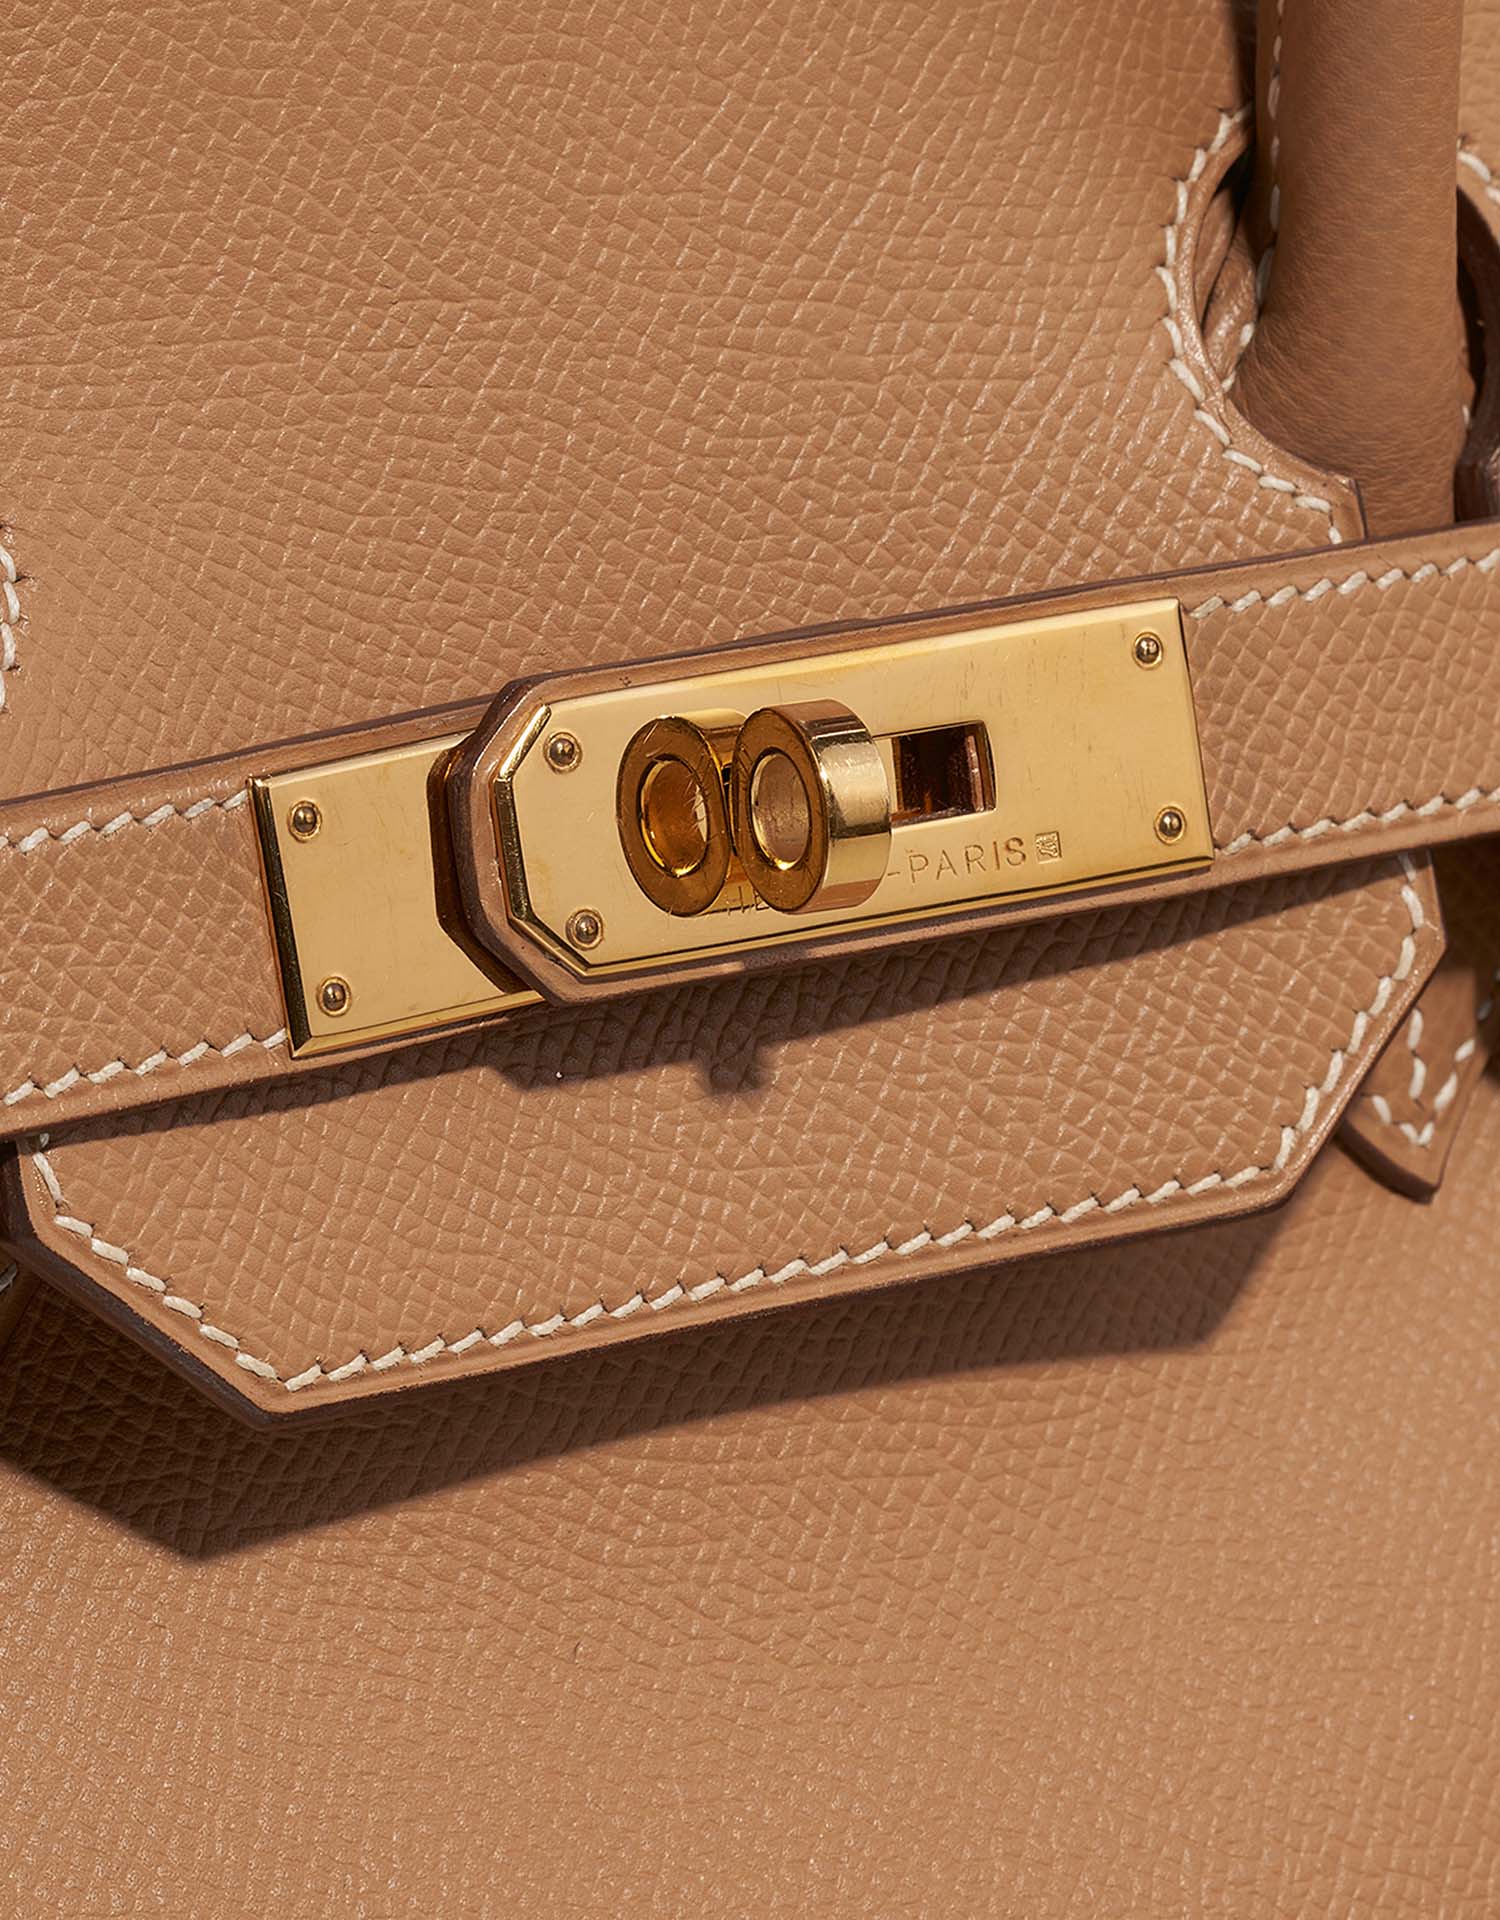 Hermès Birkin 35 Tabac-Camel Verschluss-System | Verkaufen Sie Ihre Designer-Tasche auf Saclab.com